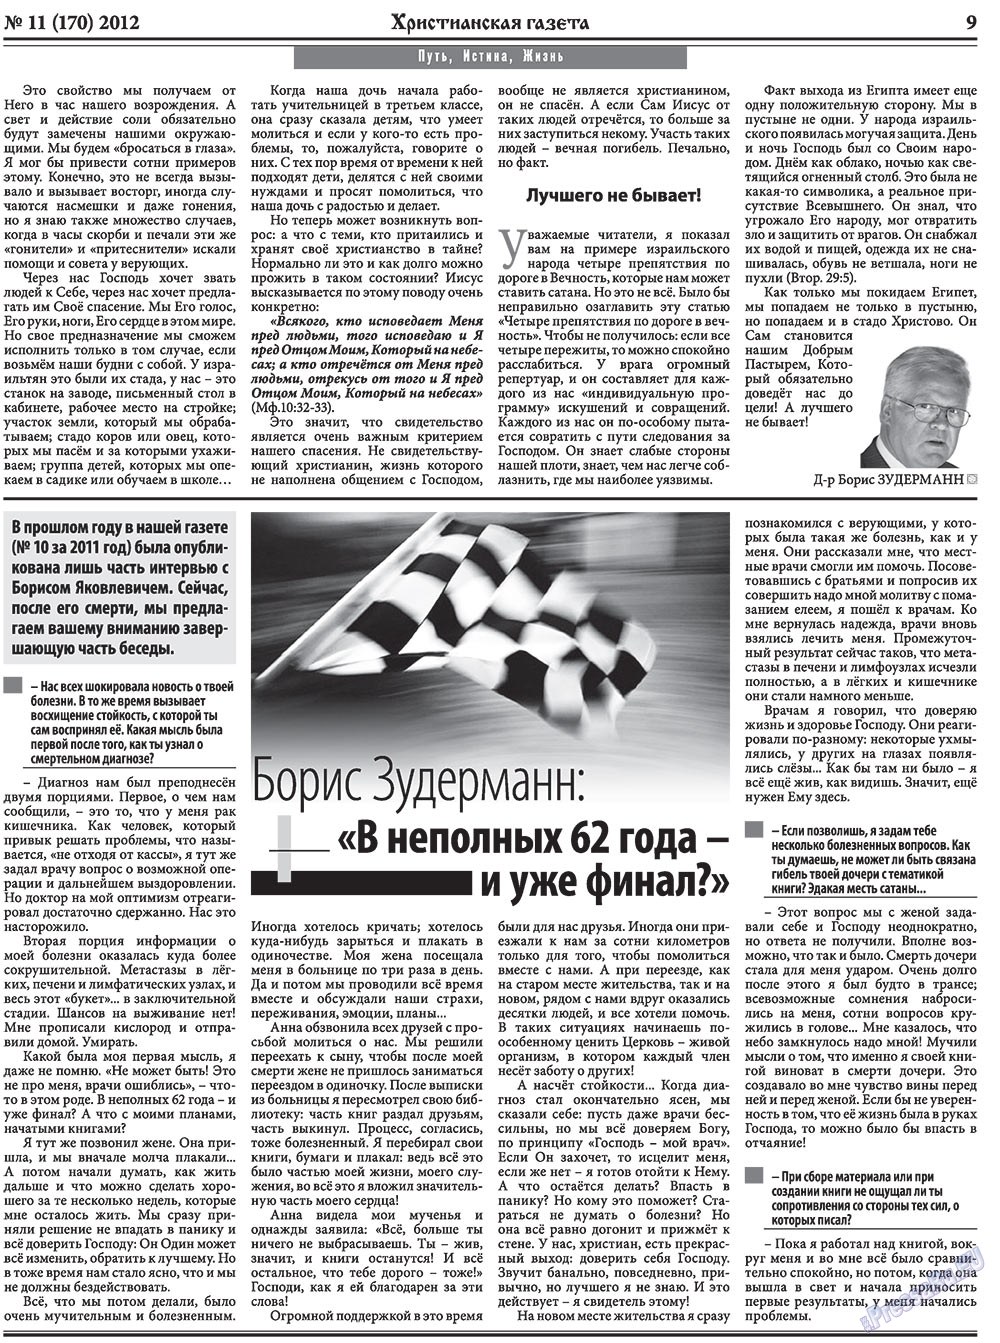 Христианская газета (газета). 2012 год, номер 11, стр. 9